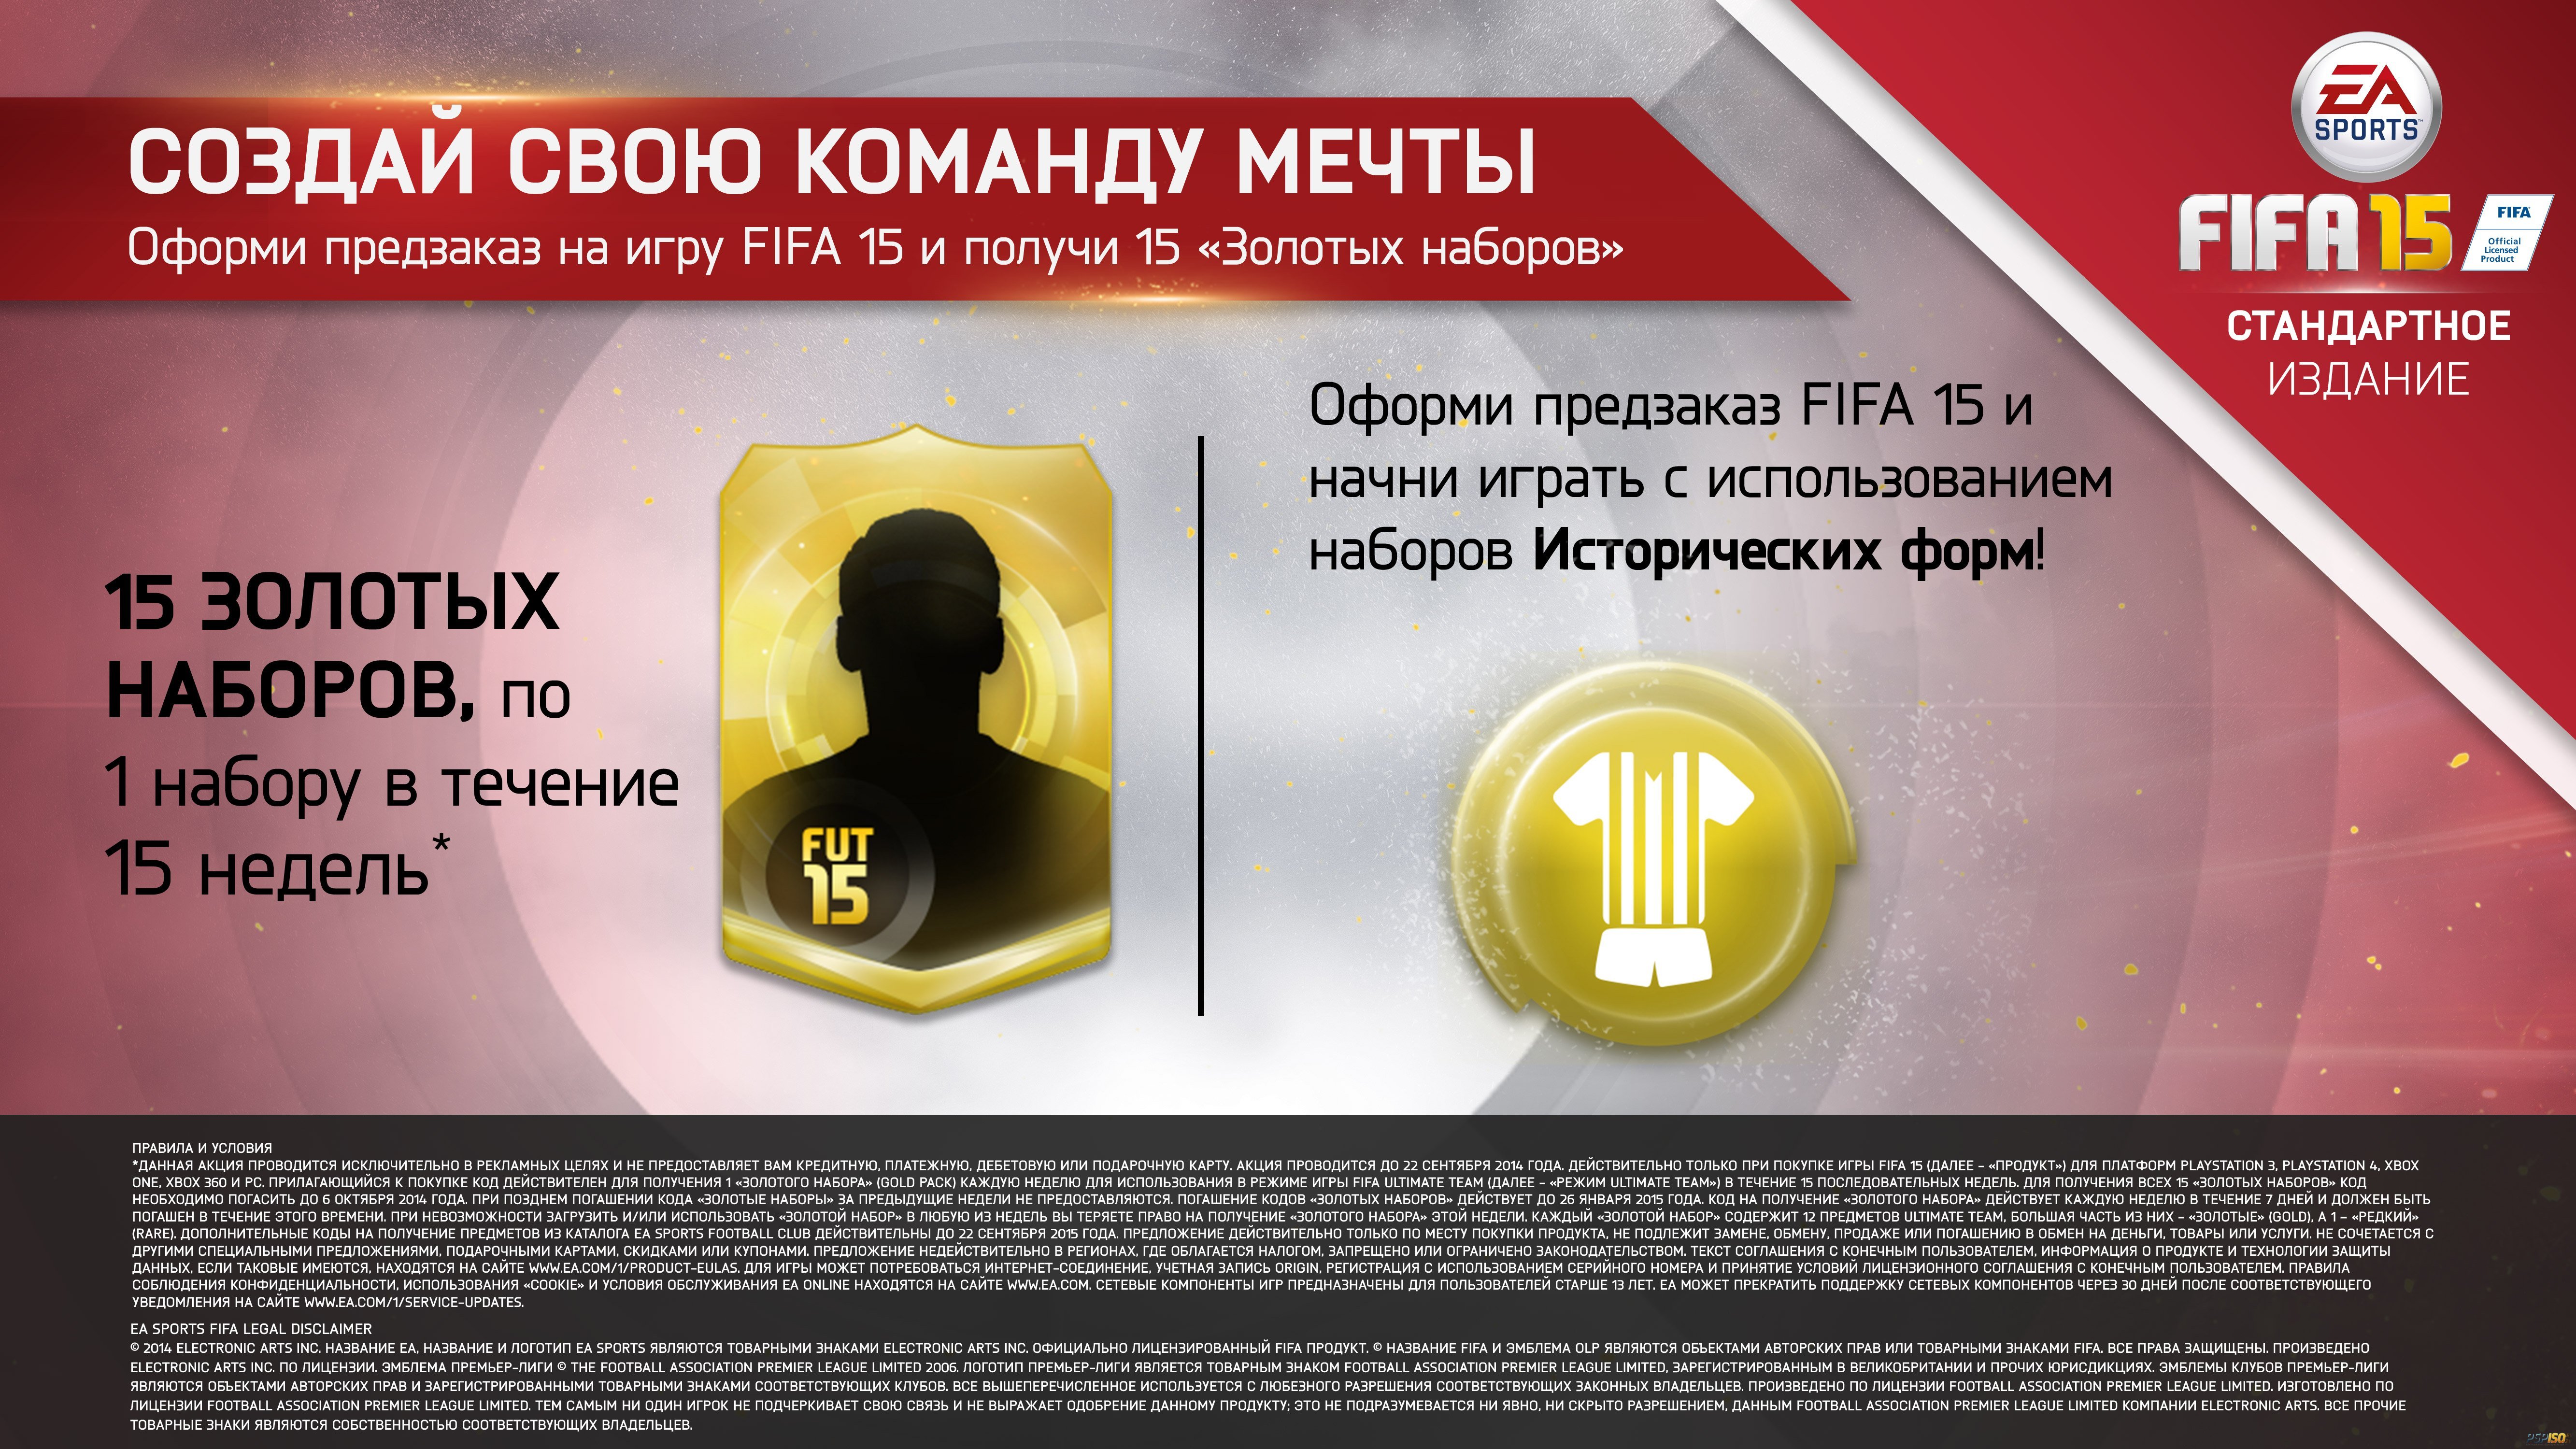 Игру код золота. Предзаказ ФИФА. Предзаказ игры. FIFA 15 ps4 купить. FIFA продукты.